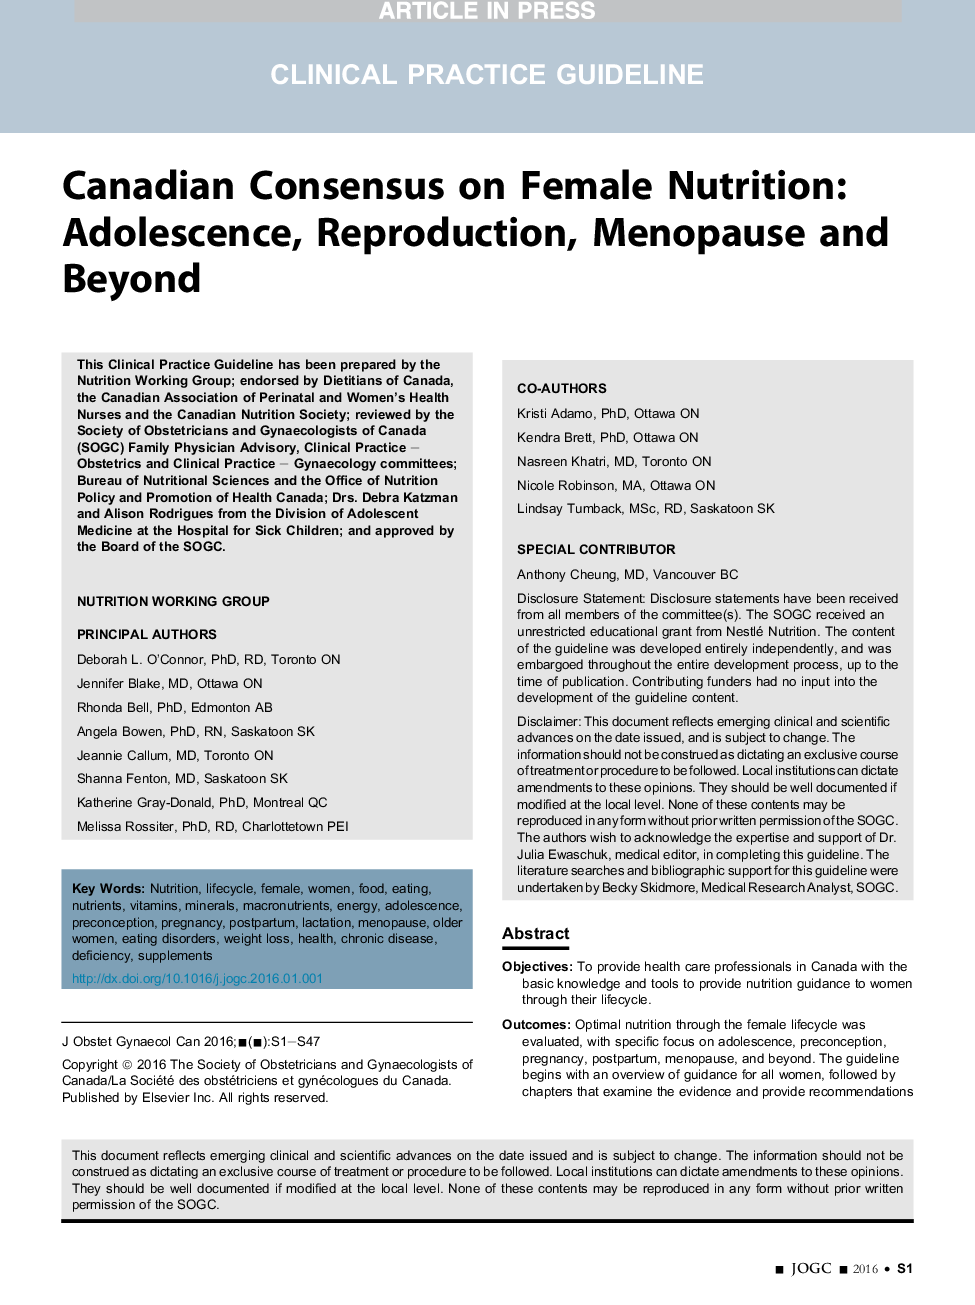 توافق کانادا در مورد تغذیه زن: نوجوانی، تولید مثل، یائسگی و فراتر از آن 